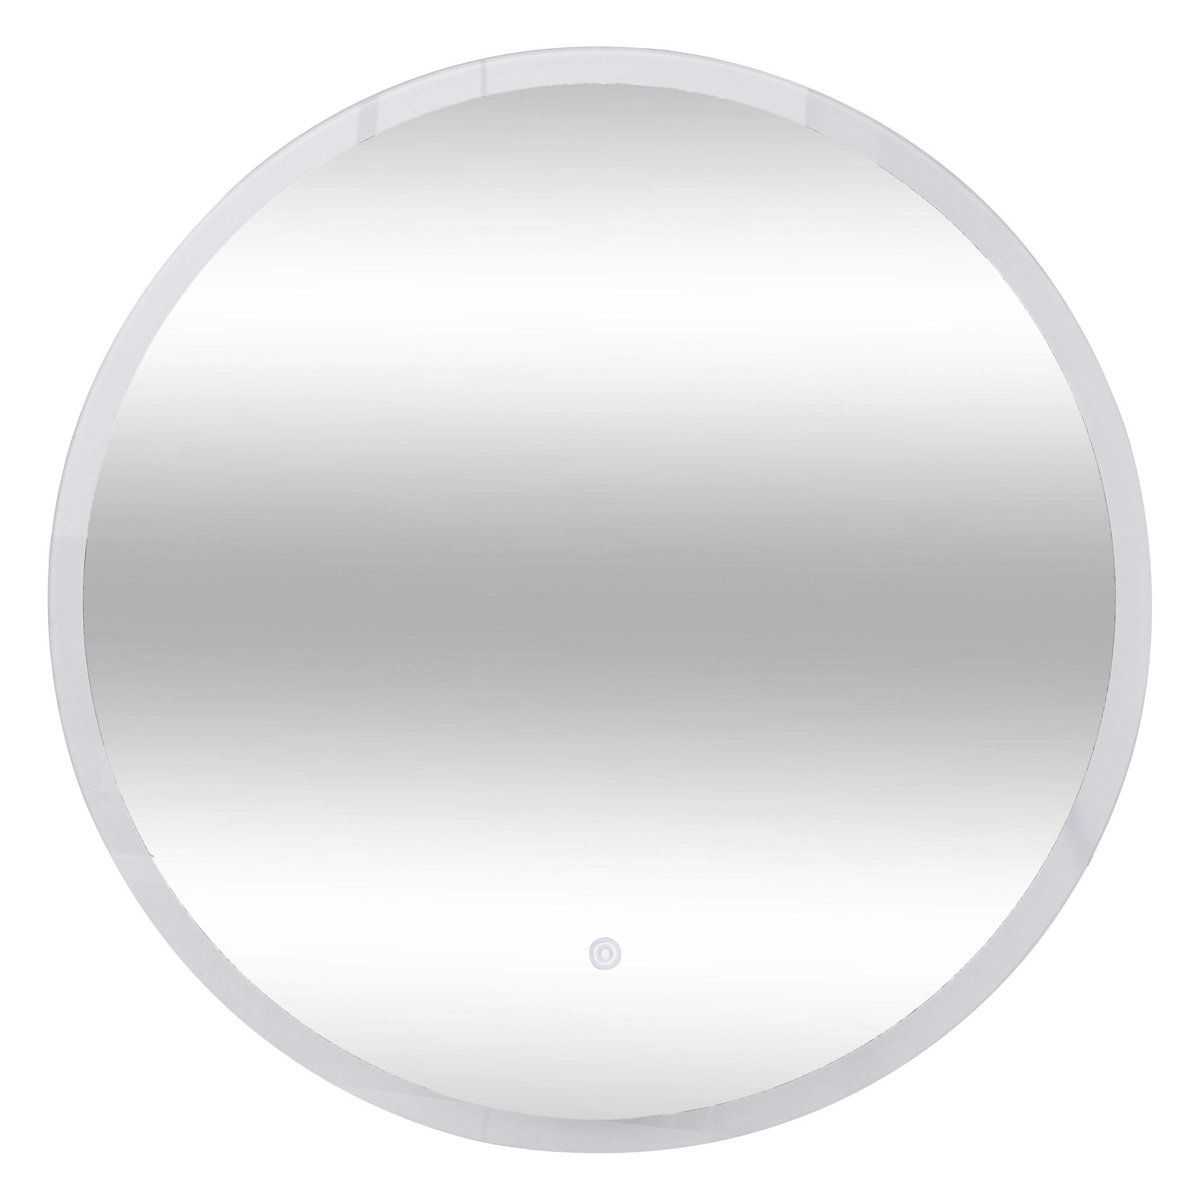 5five Simply Smart Koupelnové zrcadlo s LED osvětlením, kulaté, Ø 60 cm - EMAKO.CZ s.r.o.